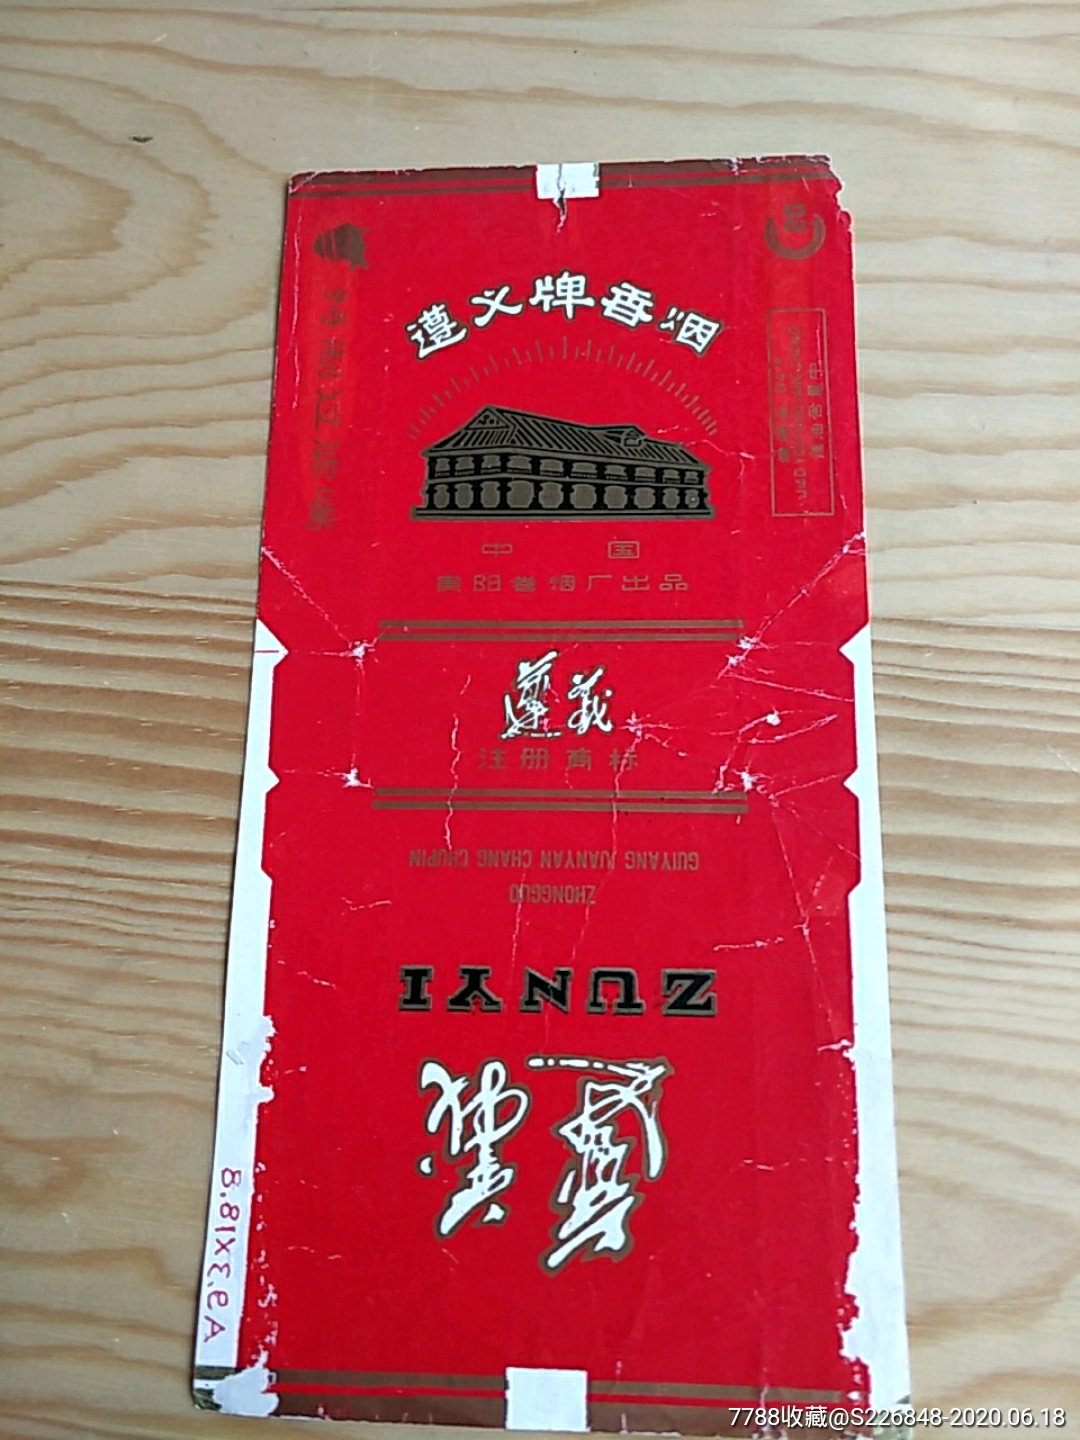 遵义牌香烟,中国贵州卷烟厂出品